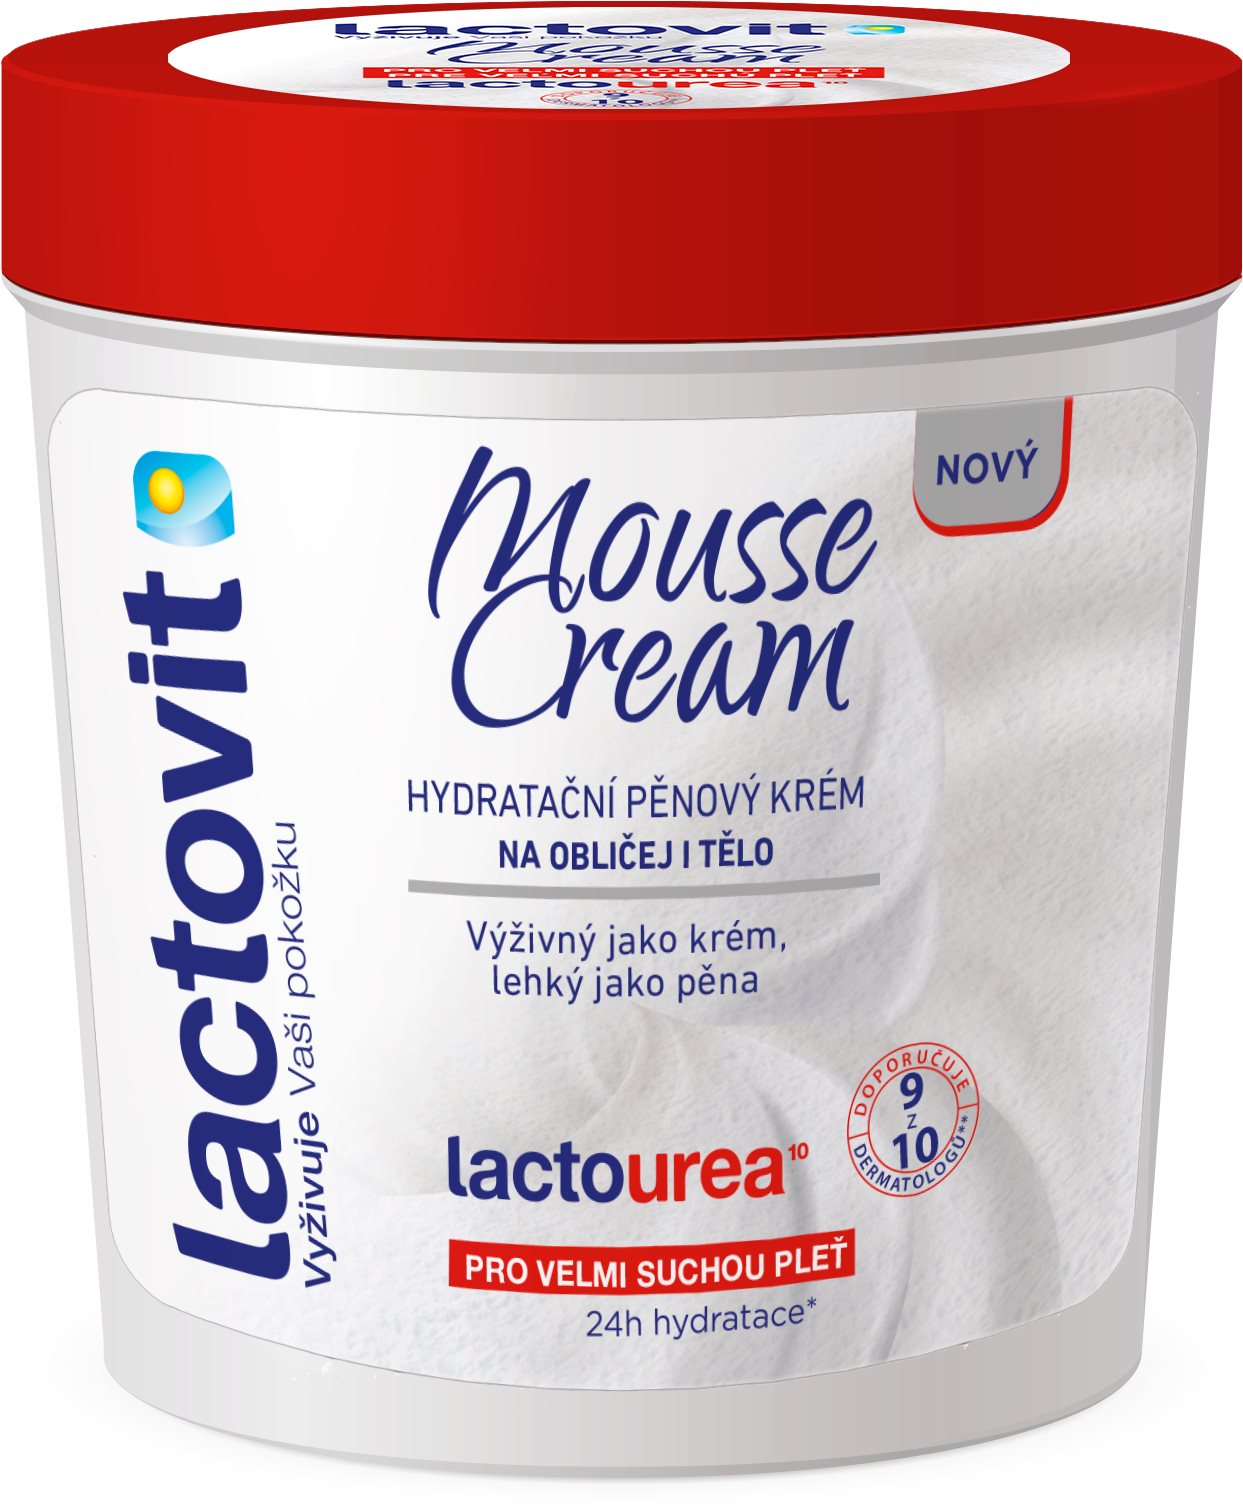 LACTOVIT Lactourea Mousse Cream 250 ml